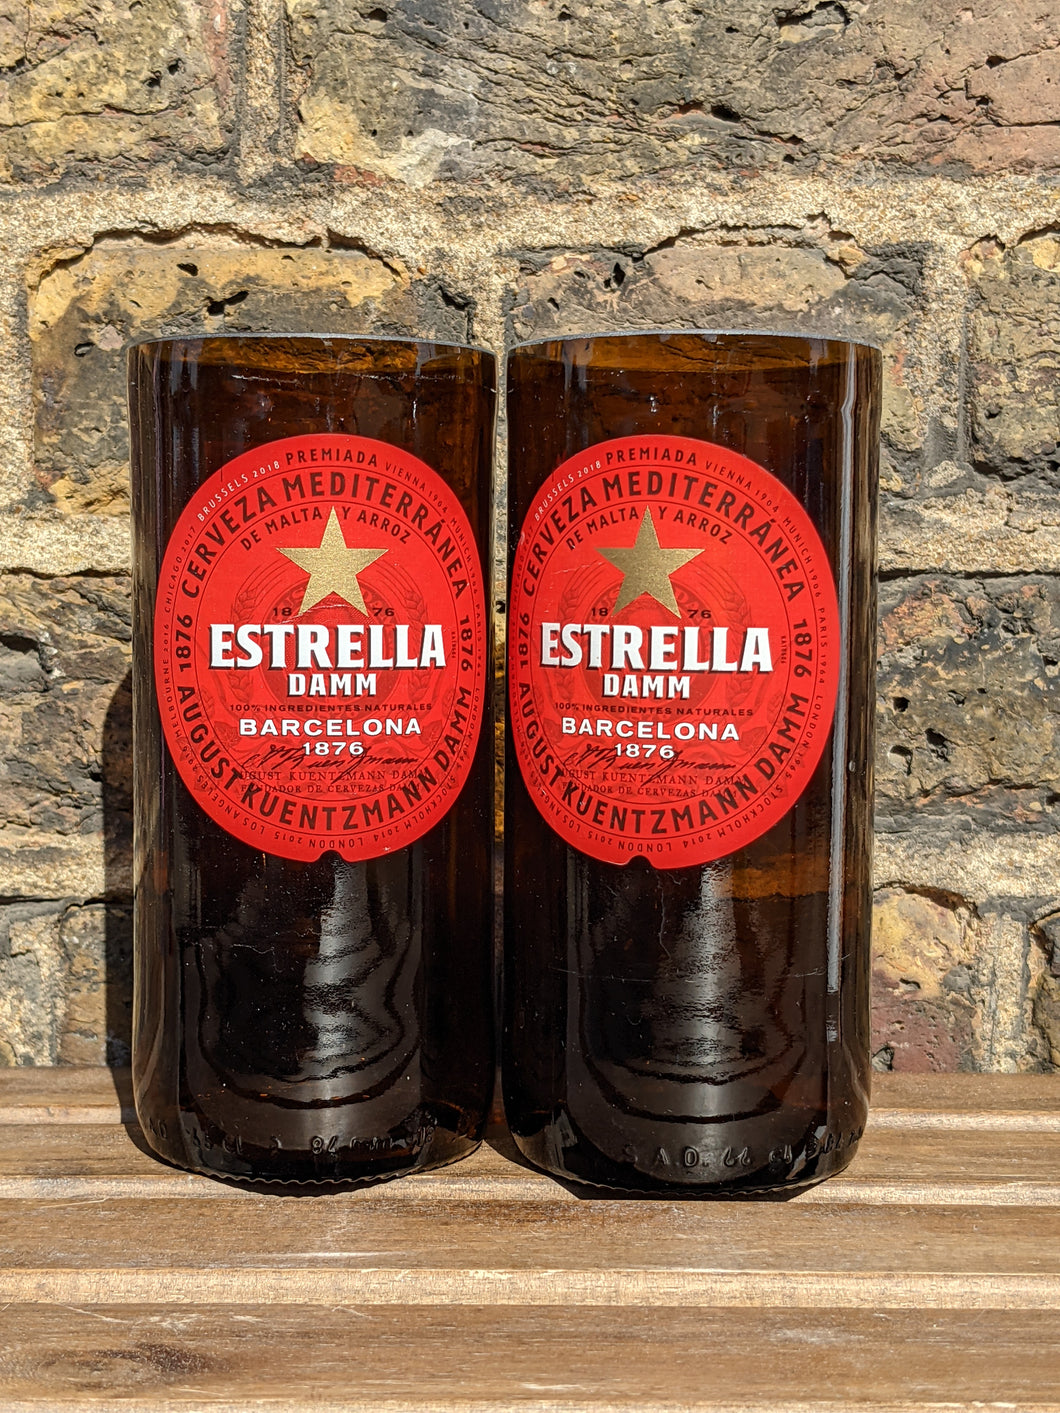 Estrella beer bottle glasses